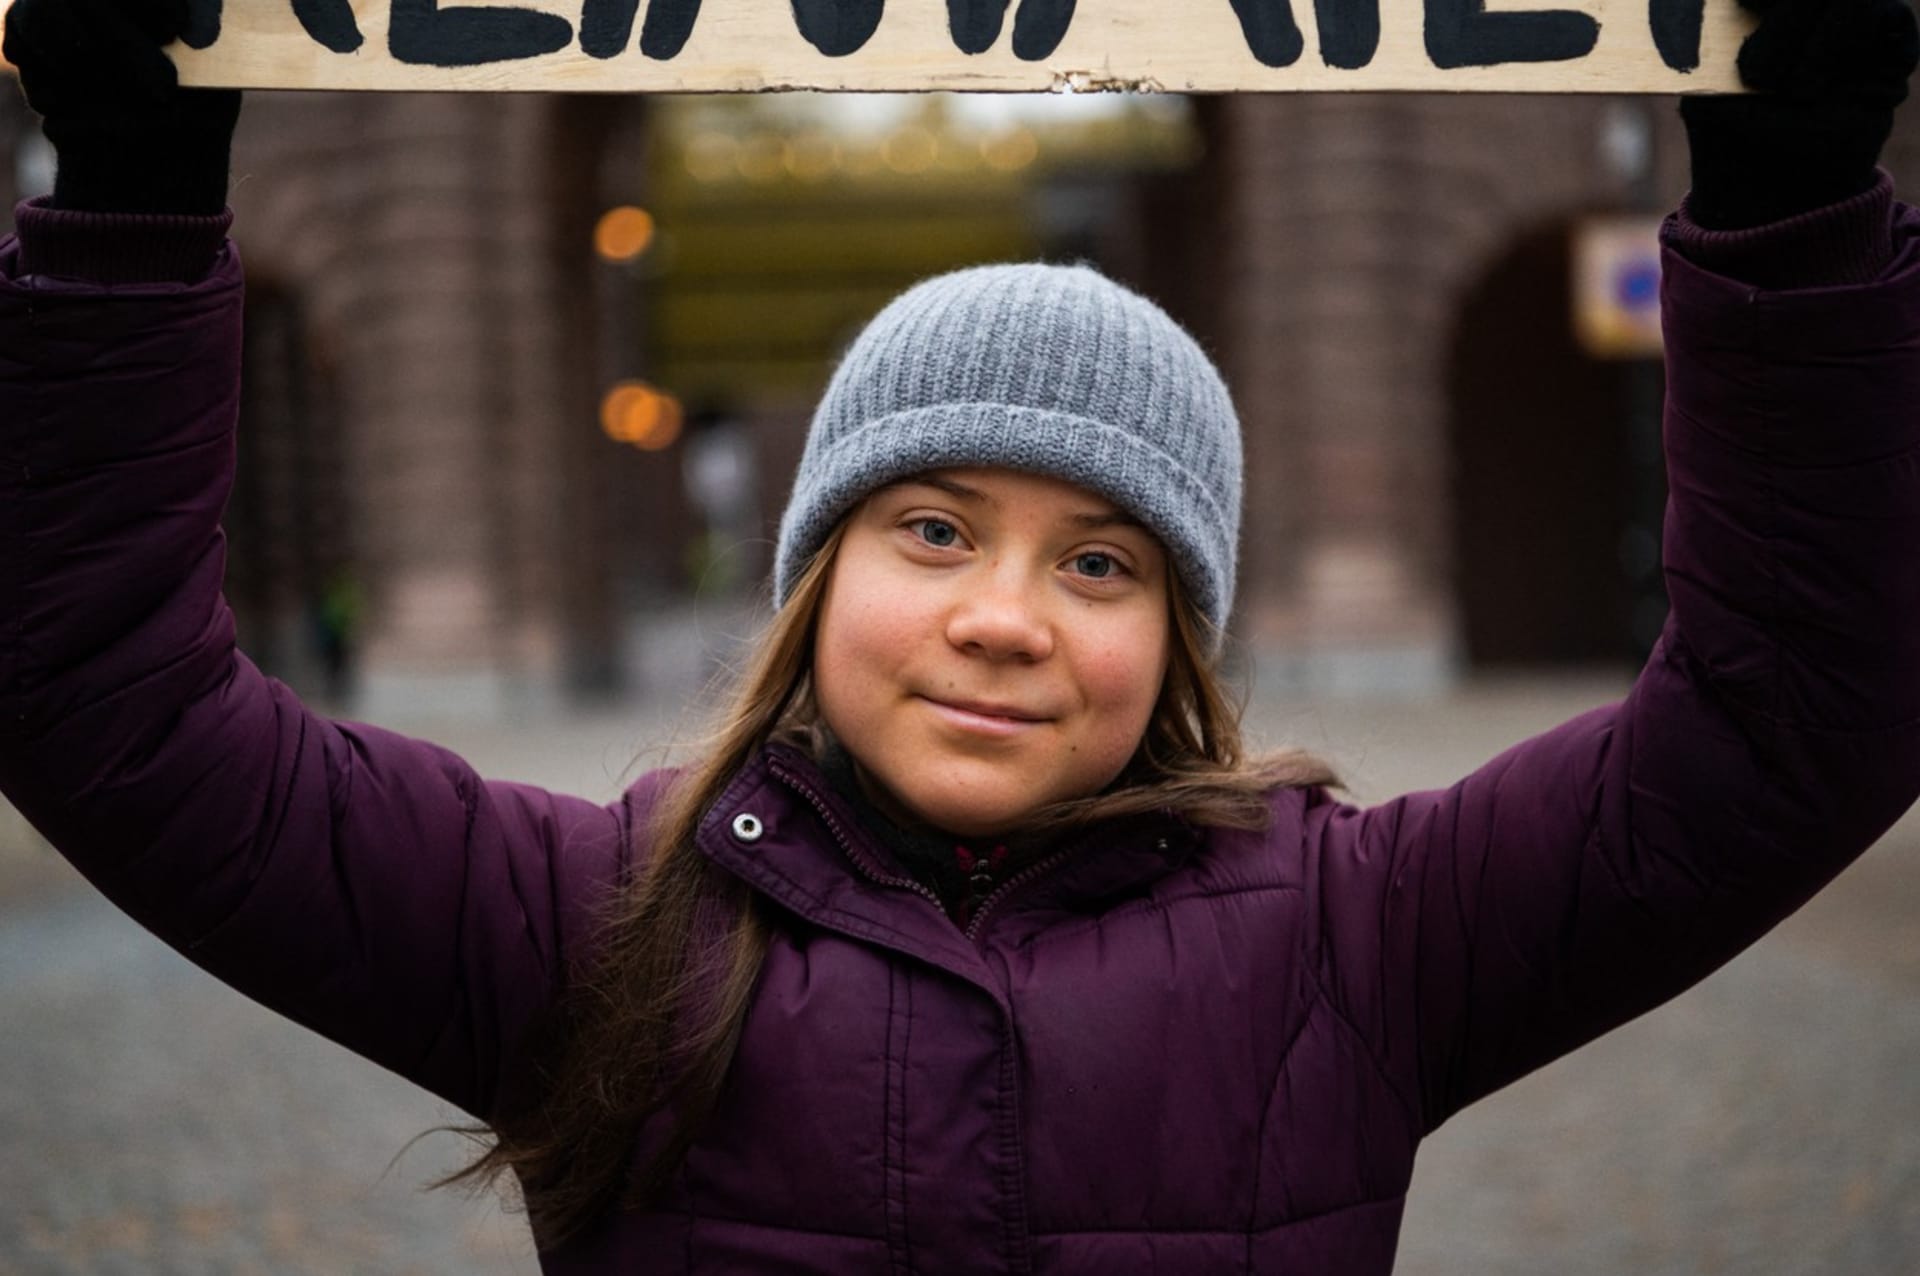 Greta Thunberg inspirovala studenty k celosvětové školní stávce.